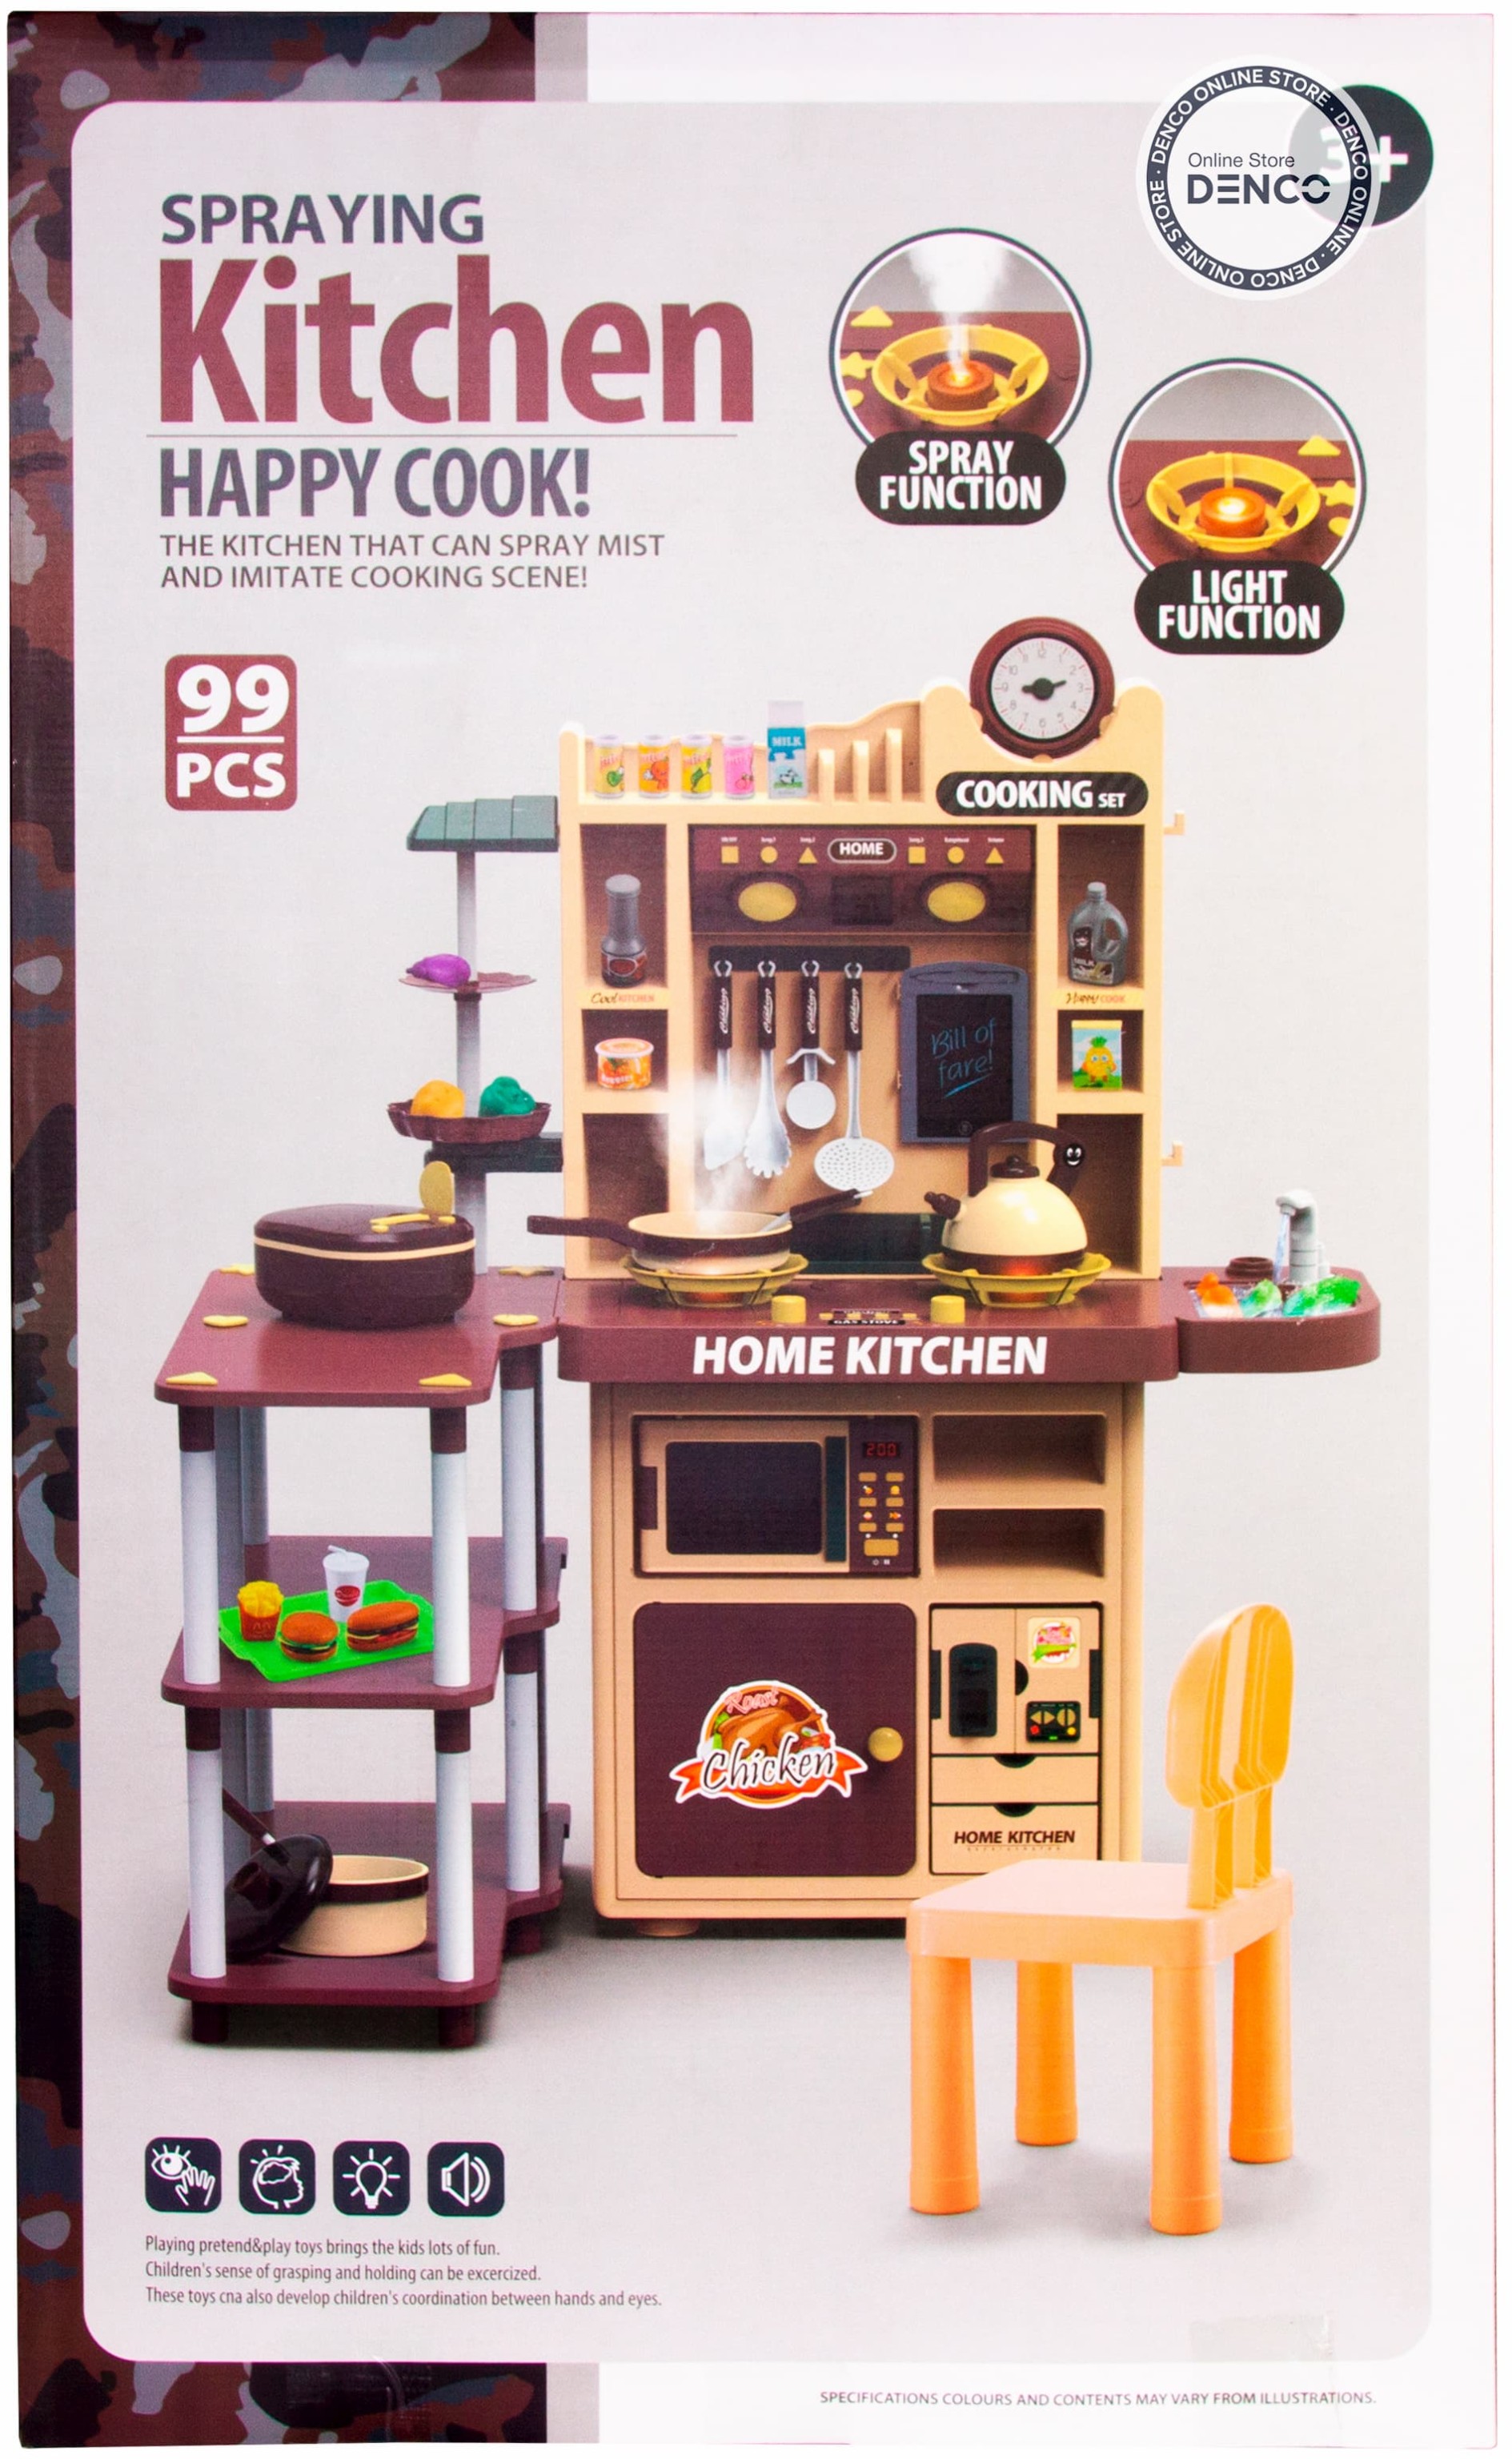 Детская игровая кухня «Home Kitchen» 5746, 99 предметов, высота 90 см. свет, звук, пар, бежит вода из крана